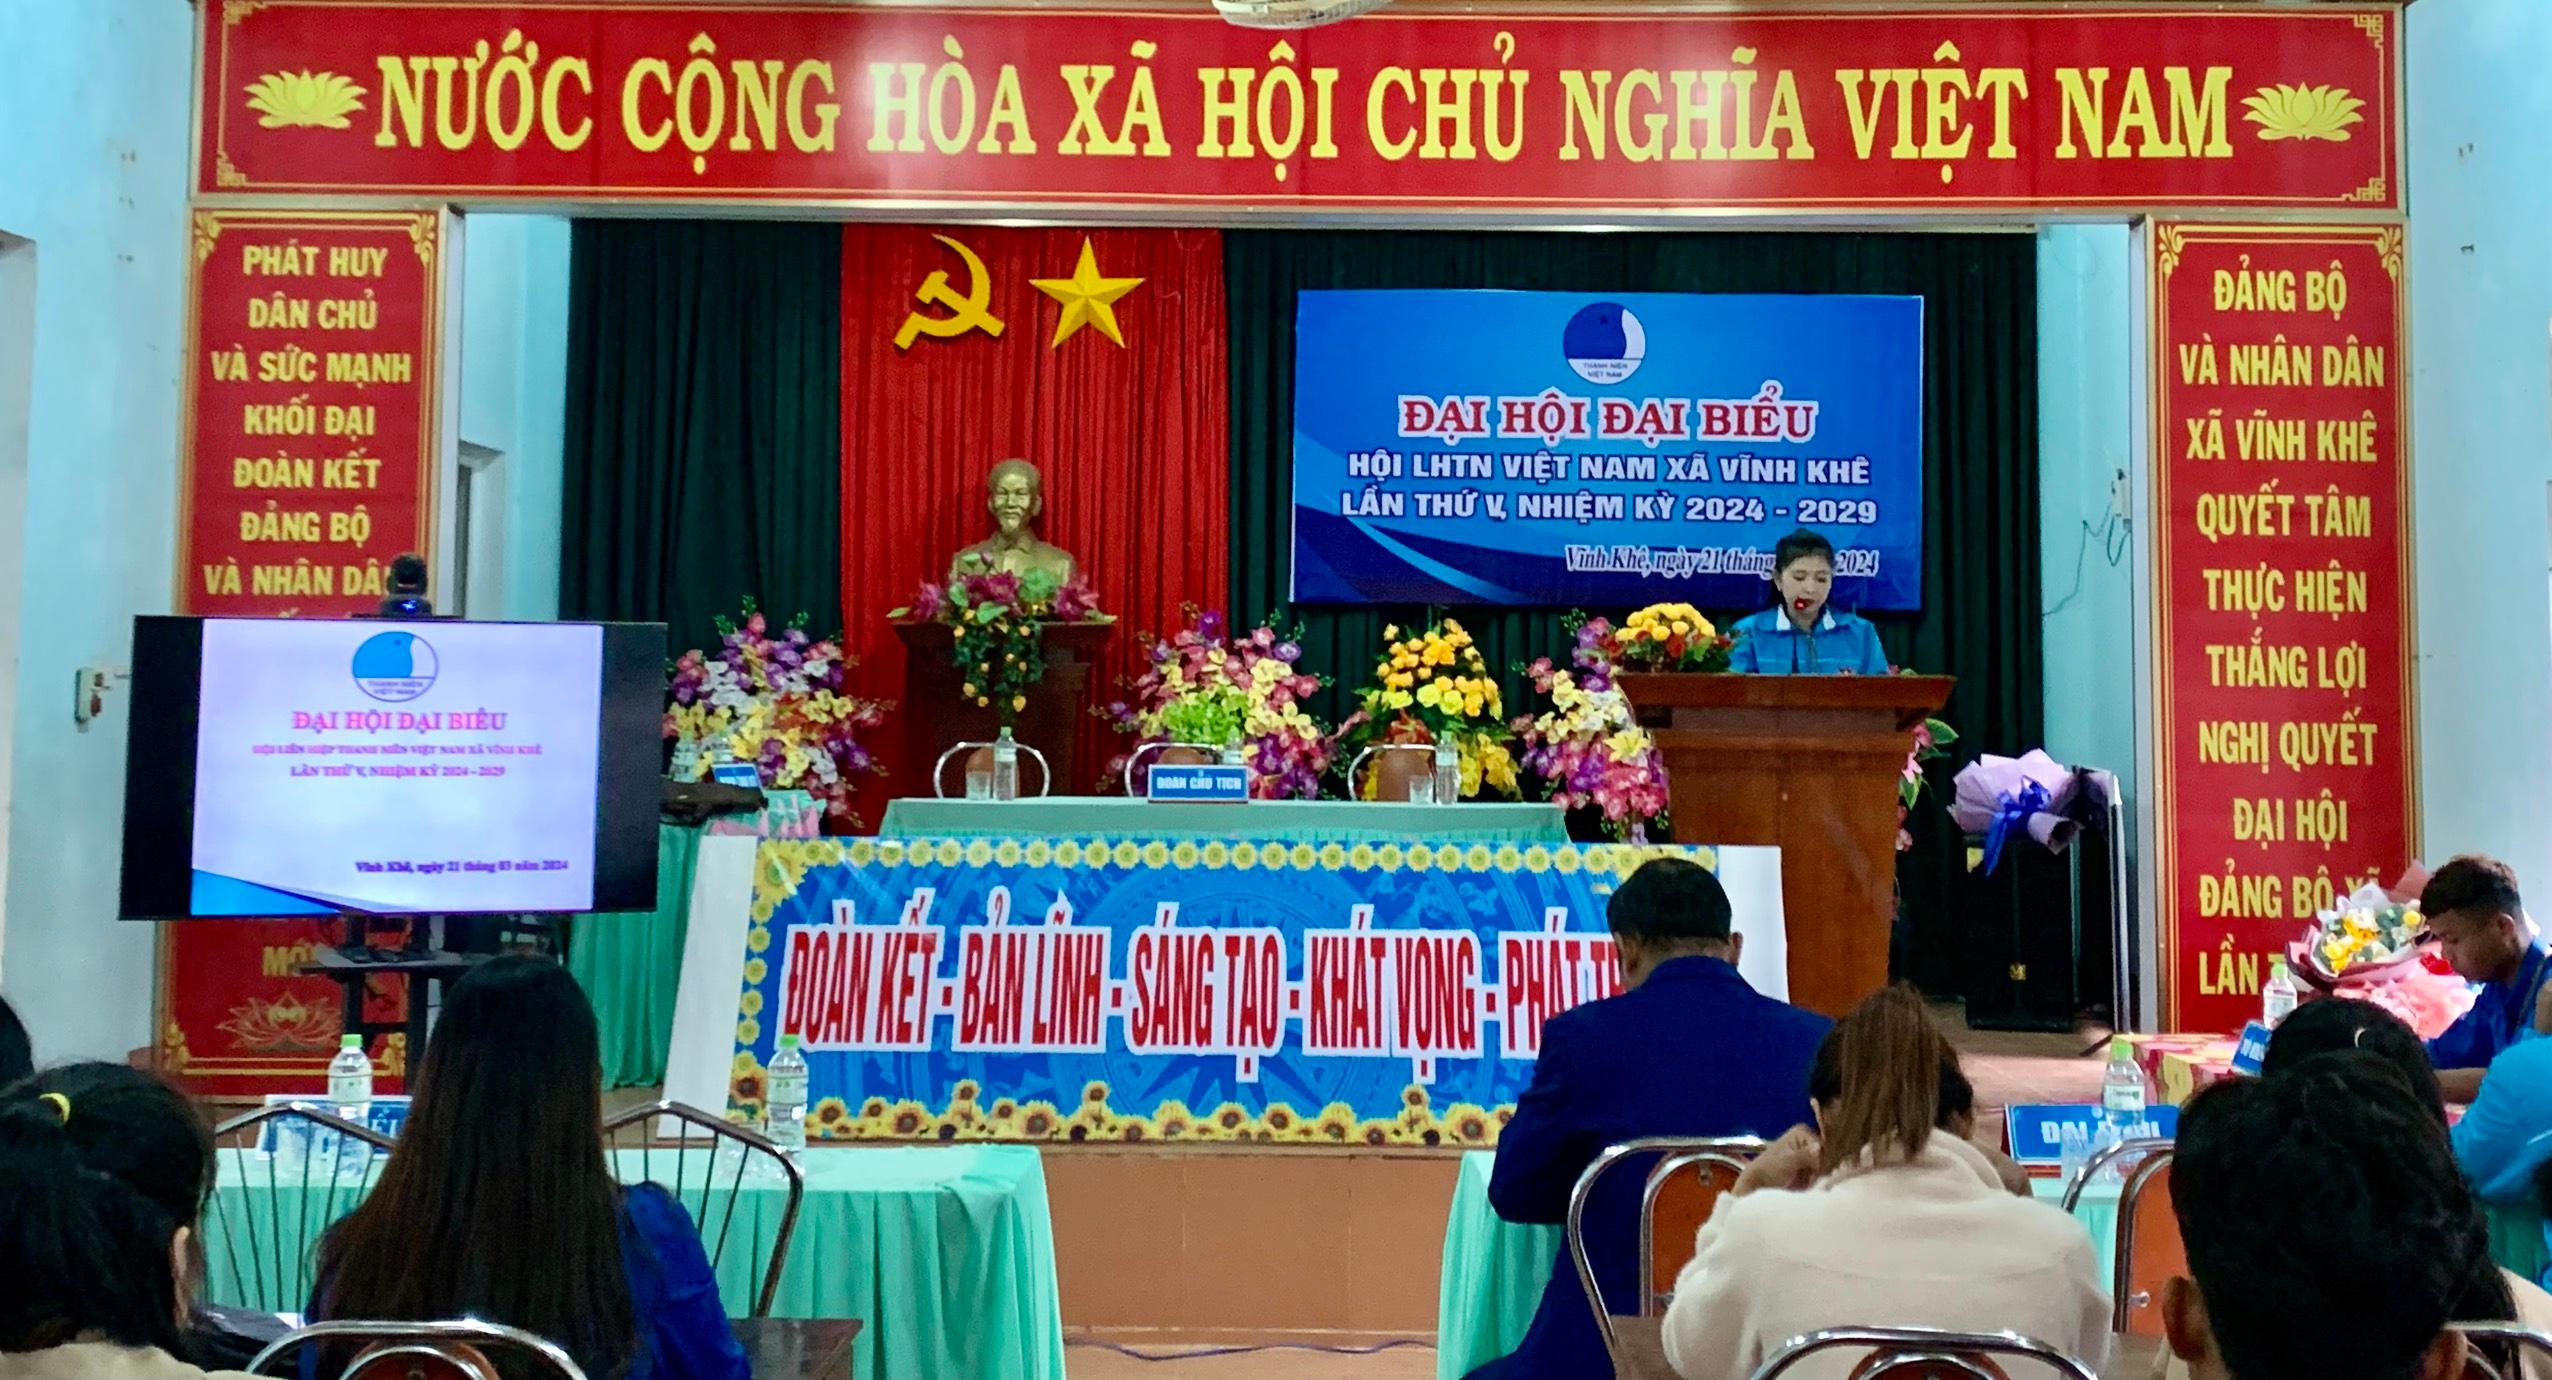 Đại hội Đại biểu Hội LHTN Việt Nam xã Vĩnh Khê lần thứ V, nhiệm kỳ 2024 - 2029